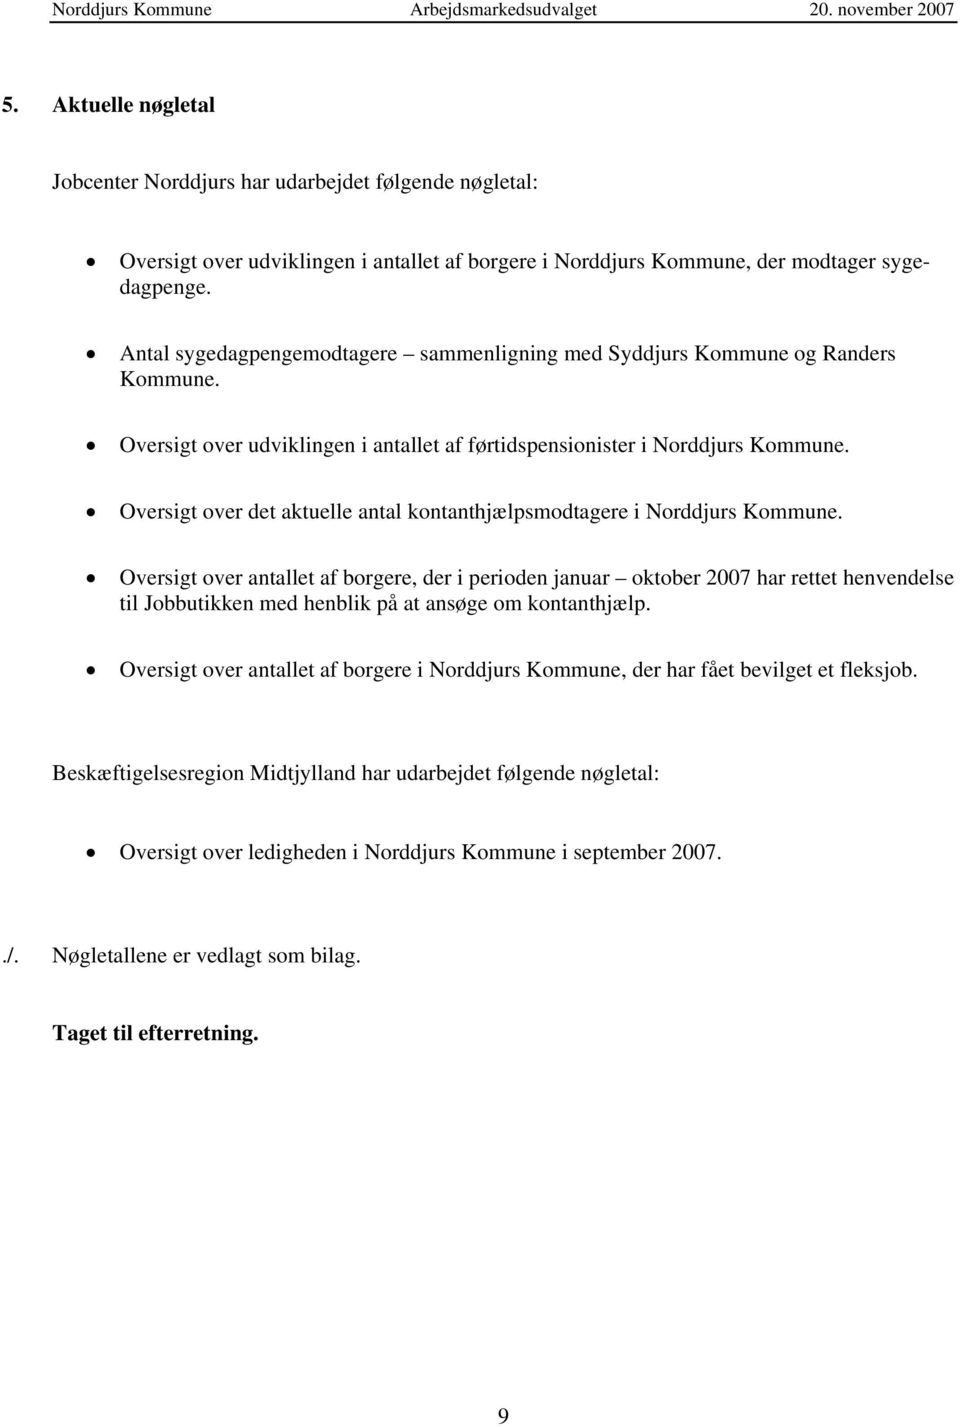 Oversigt over det aktuelle antal kontanthjælpsmodtagere i Norddjurs Kommune.